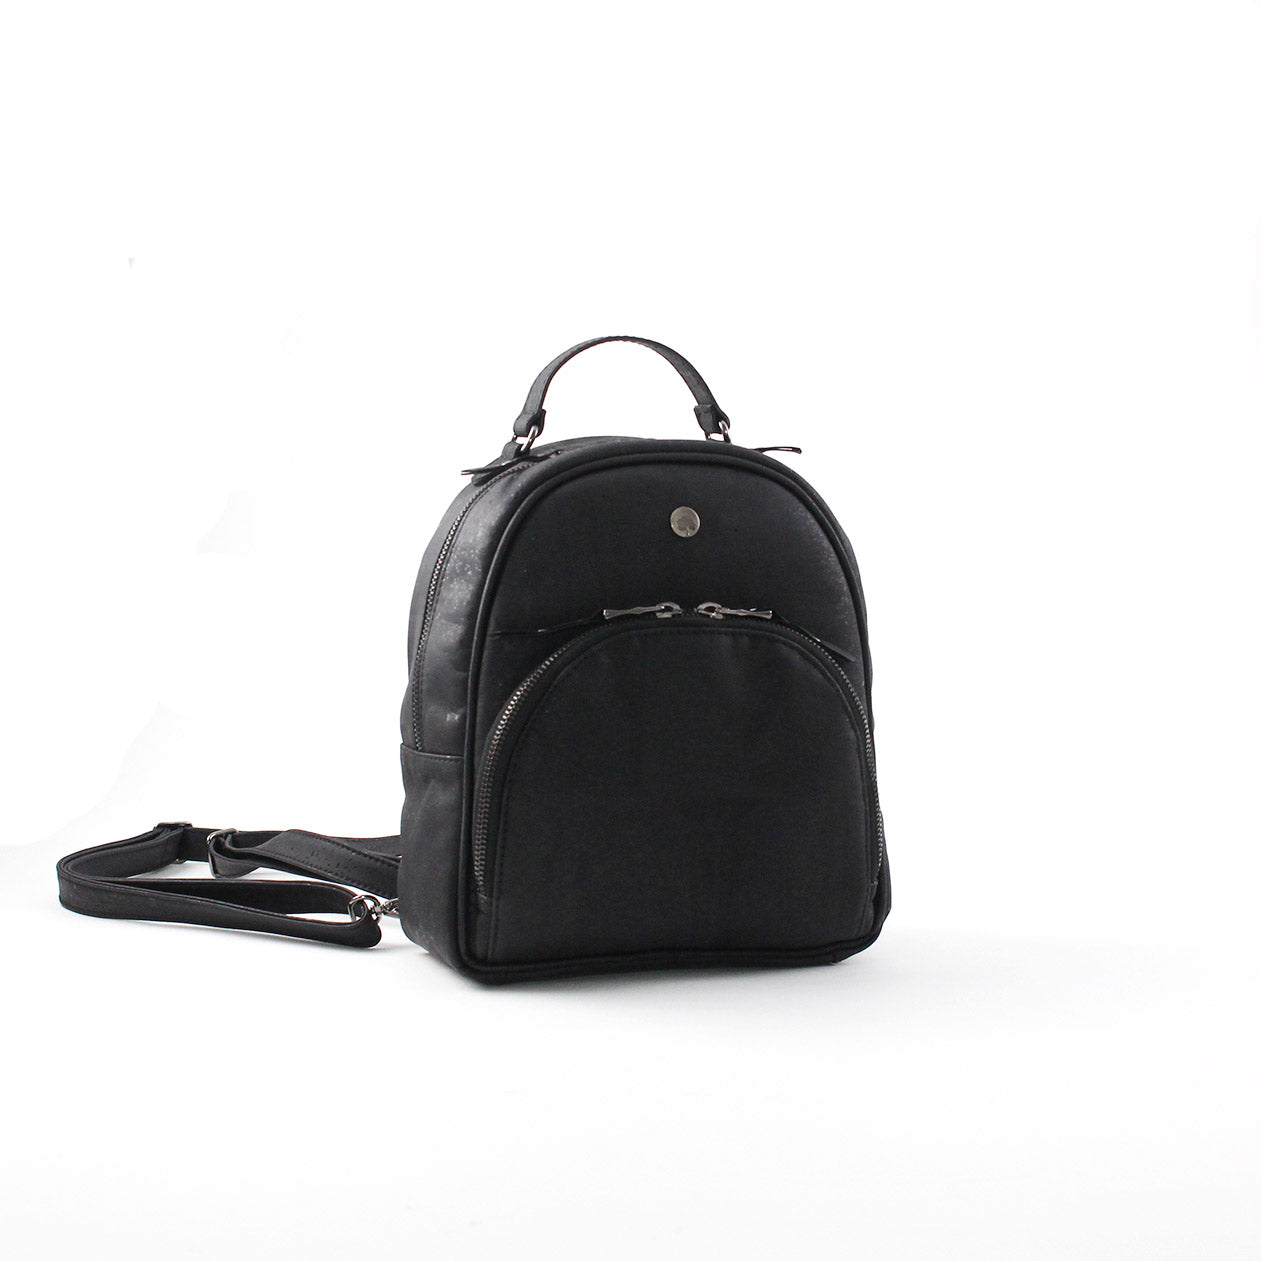 Binca Cork Backpack In Black And Gold - Eluxe Exclusives